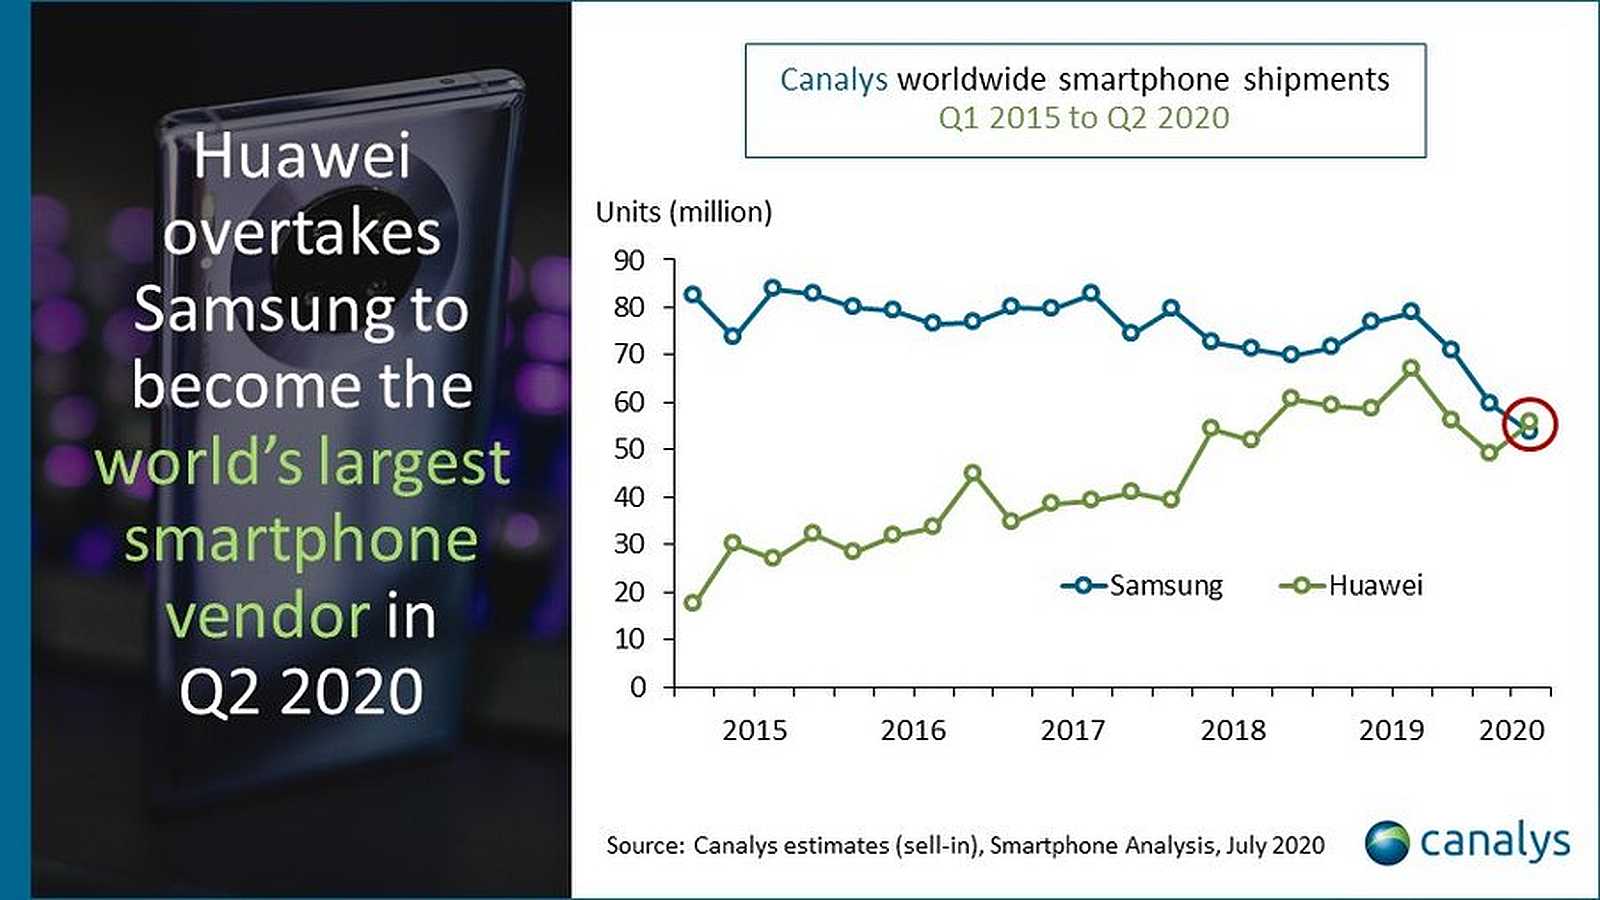 Gráfico que muestra las ventas de teléfonos inteligentes Huawei frente a Samsung